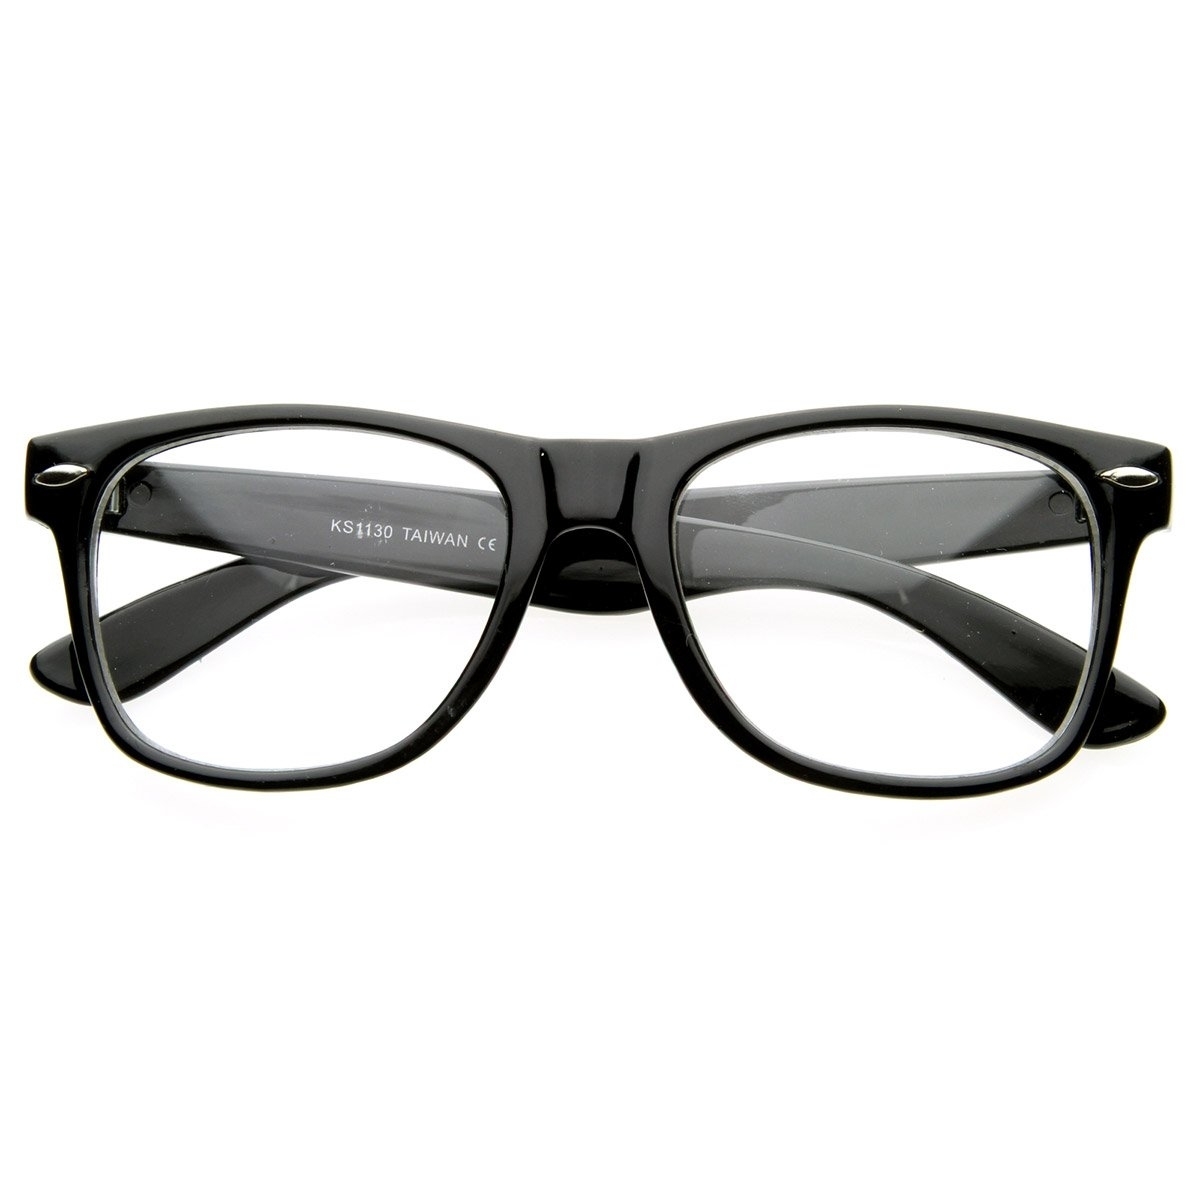 Vintage Inspired Eyewear Original Geek Nerd Clear Lens Horn Rimmed Glasses - Red